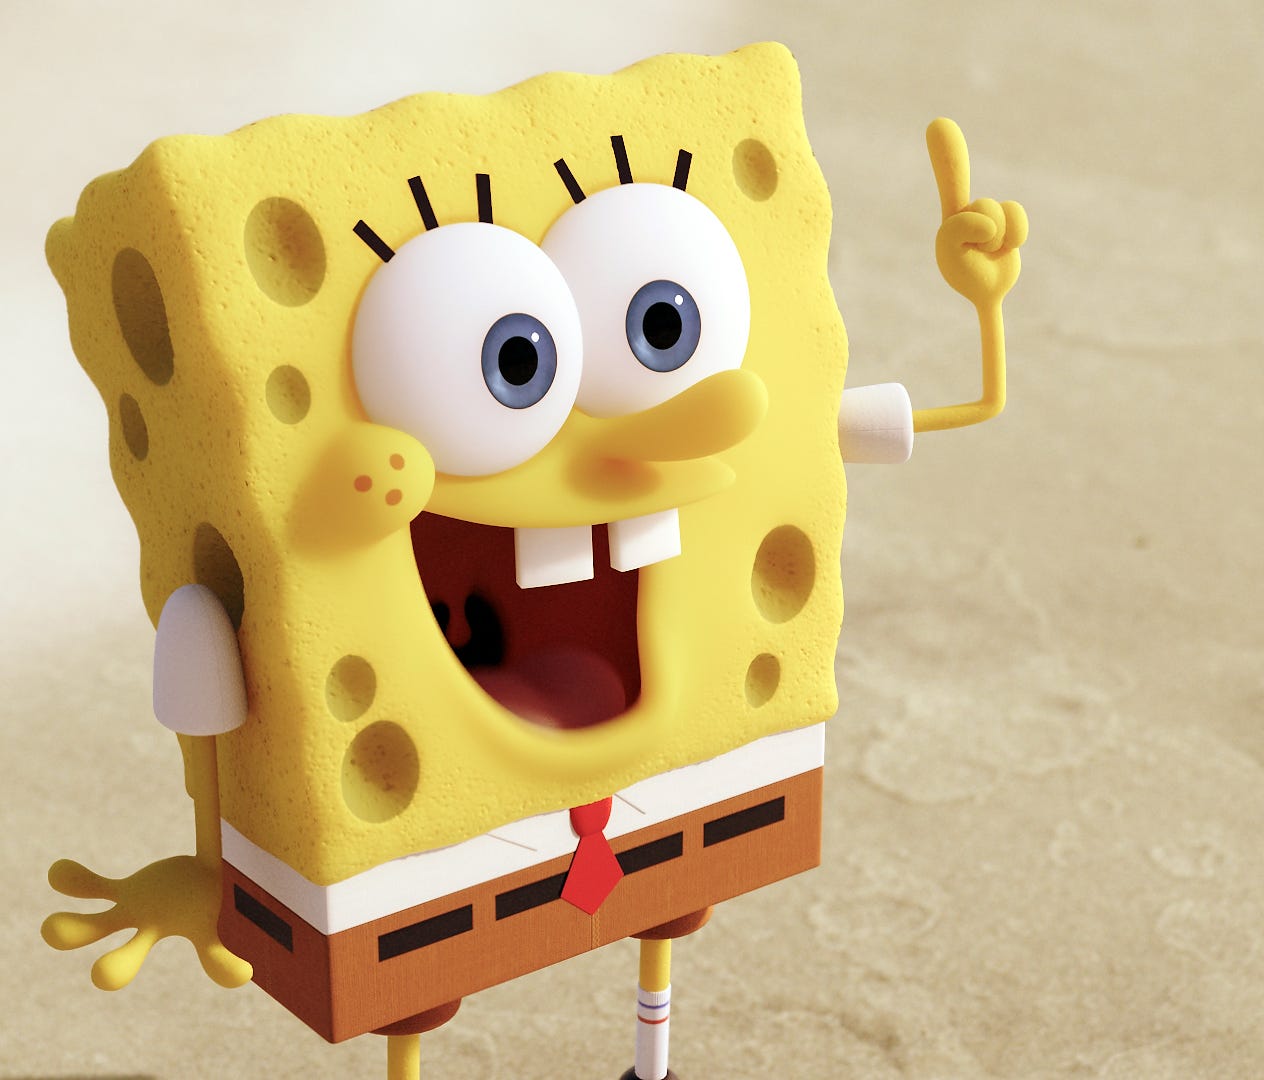 SpongeBob SquarePants, shown here in a scene from 